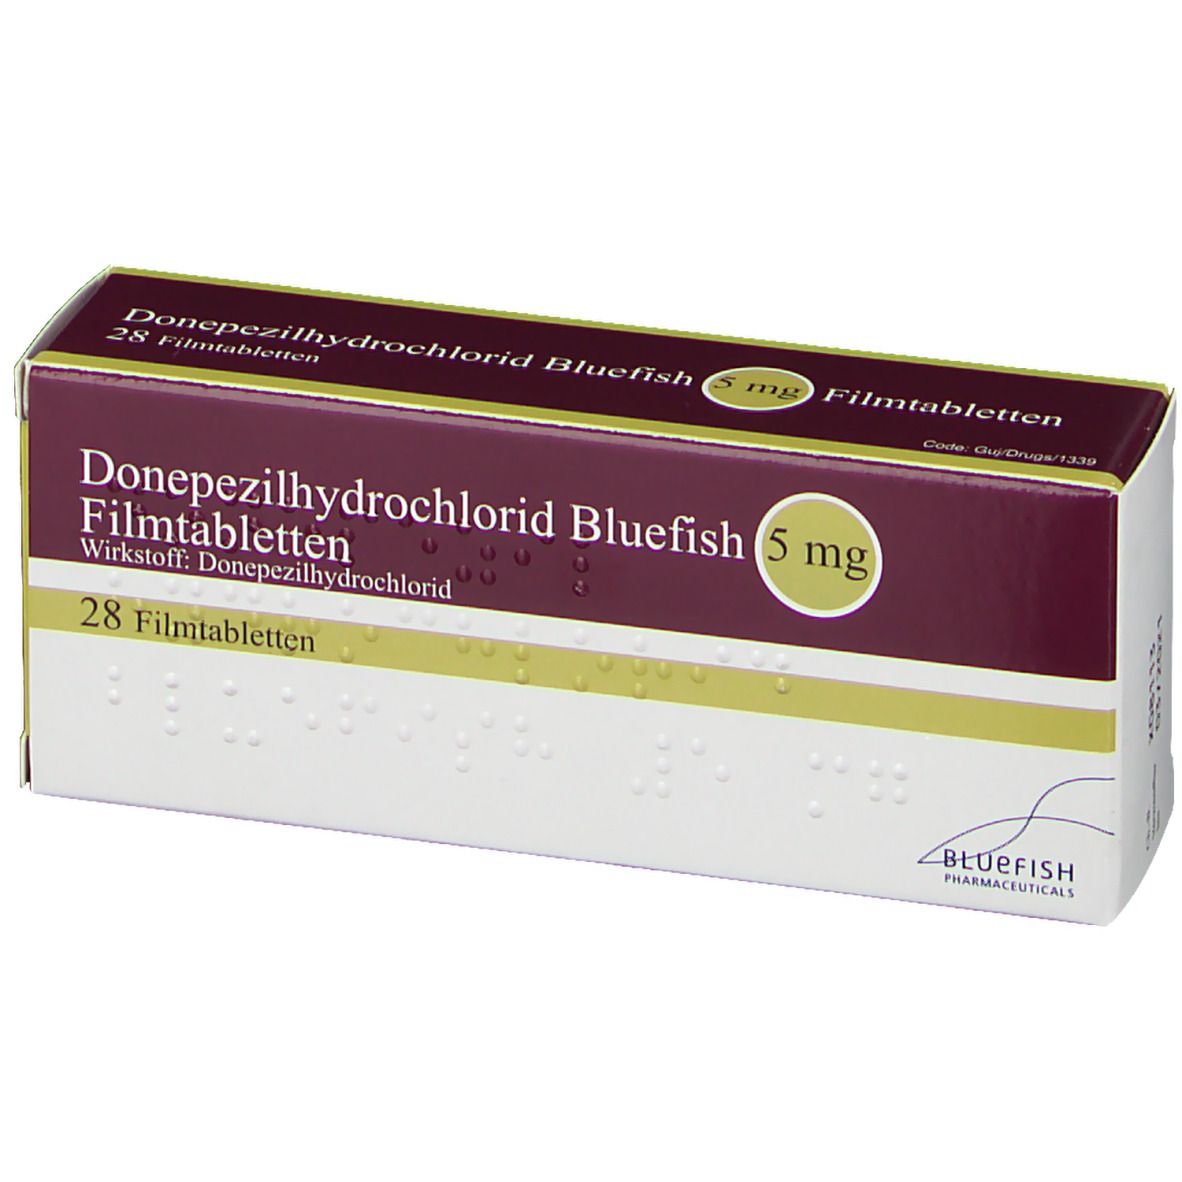 Donepezilhydrochlorid Bluefish 5 mg